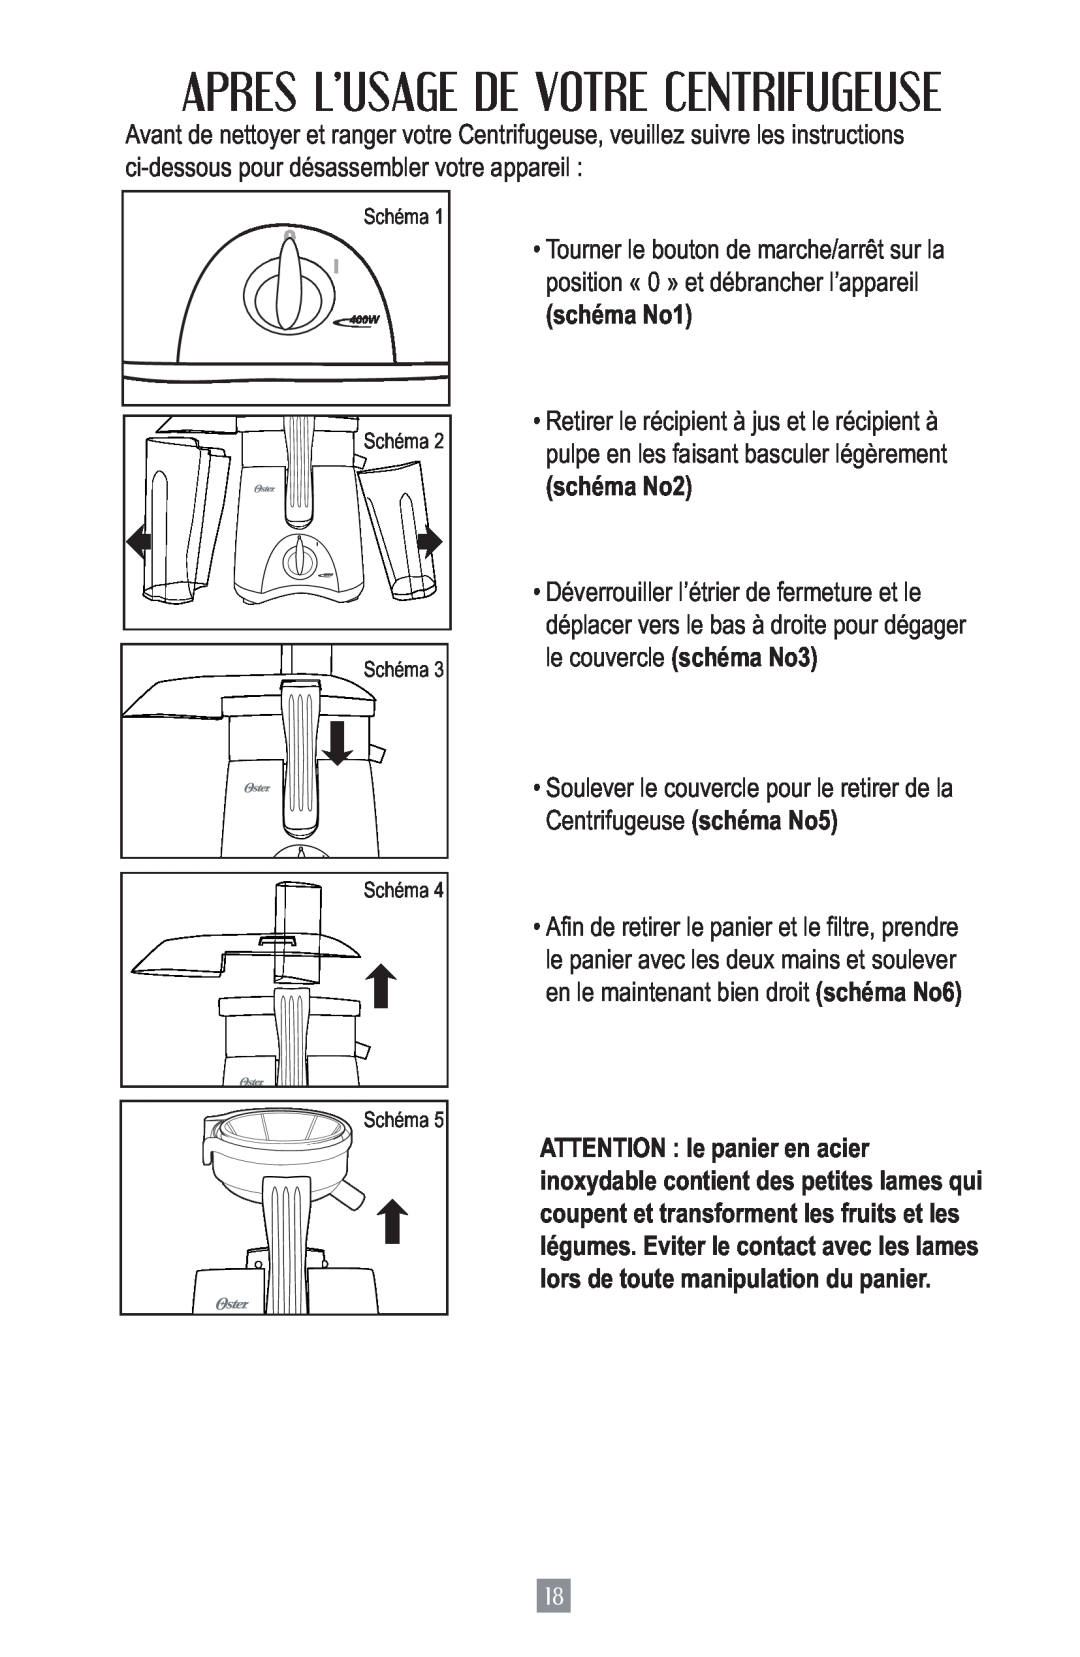 Oster 3157 instruction manual Apres L’Usage De Votre Centrifugeuse, schéma No1, schéma No2 